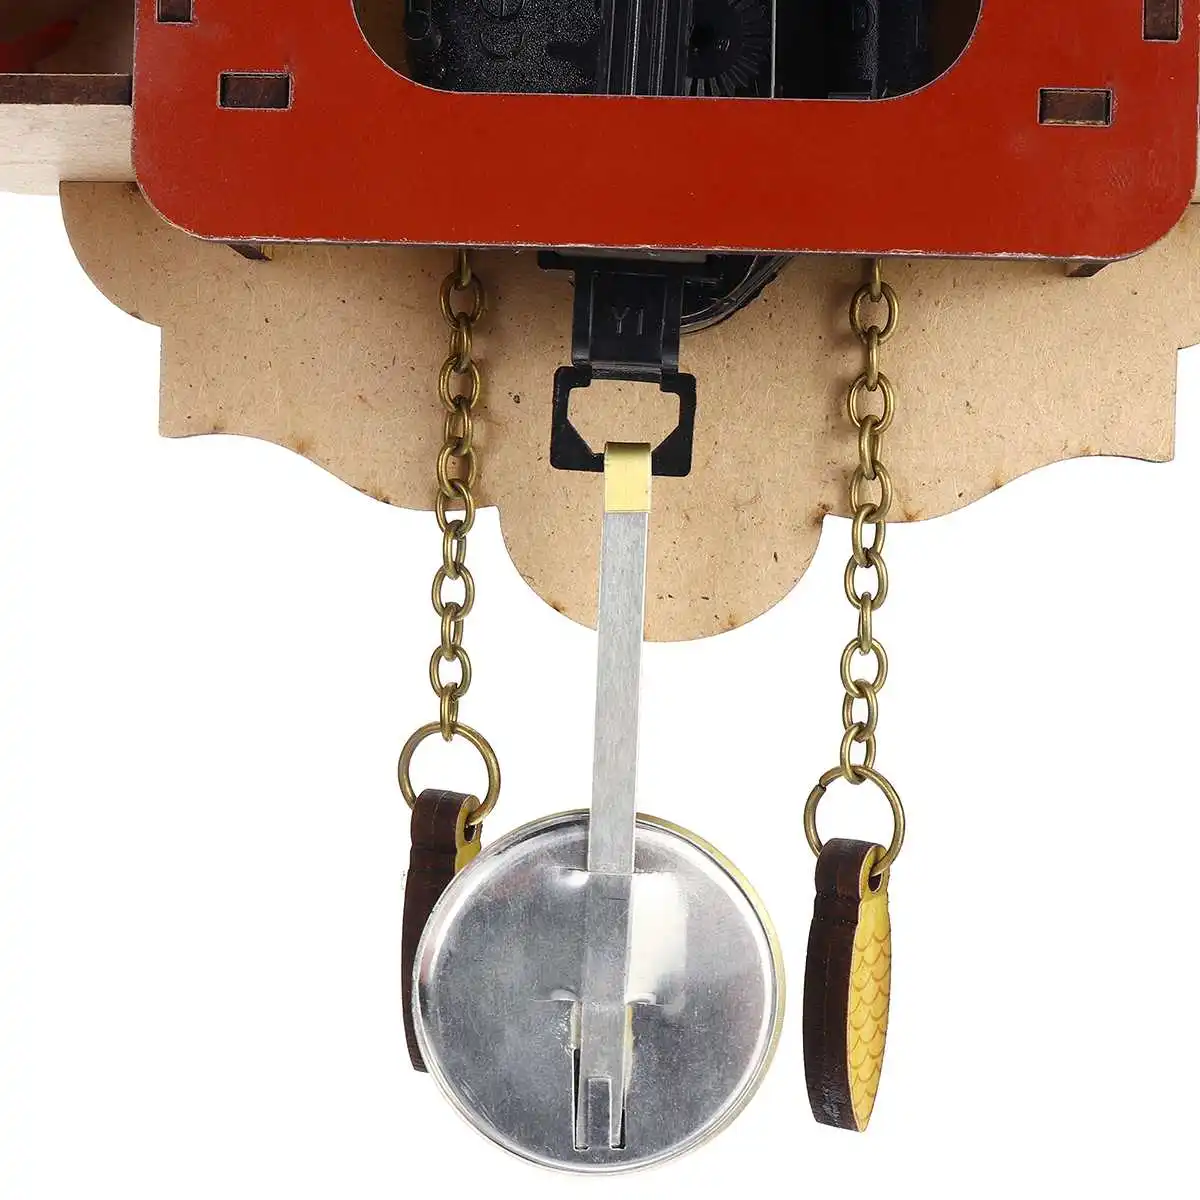 Cuckoo часы 3D Качели настенные часы мультфильмы гостиная настенные часы птица Cuckoo будильник детские украшения Домашний день будильник